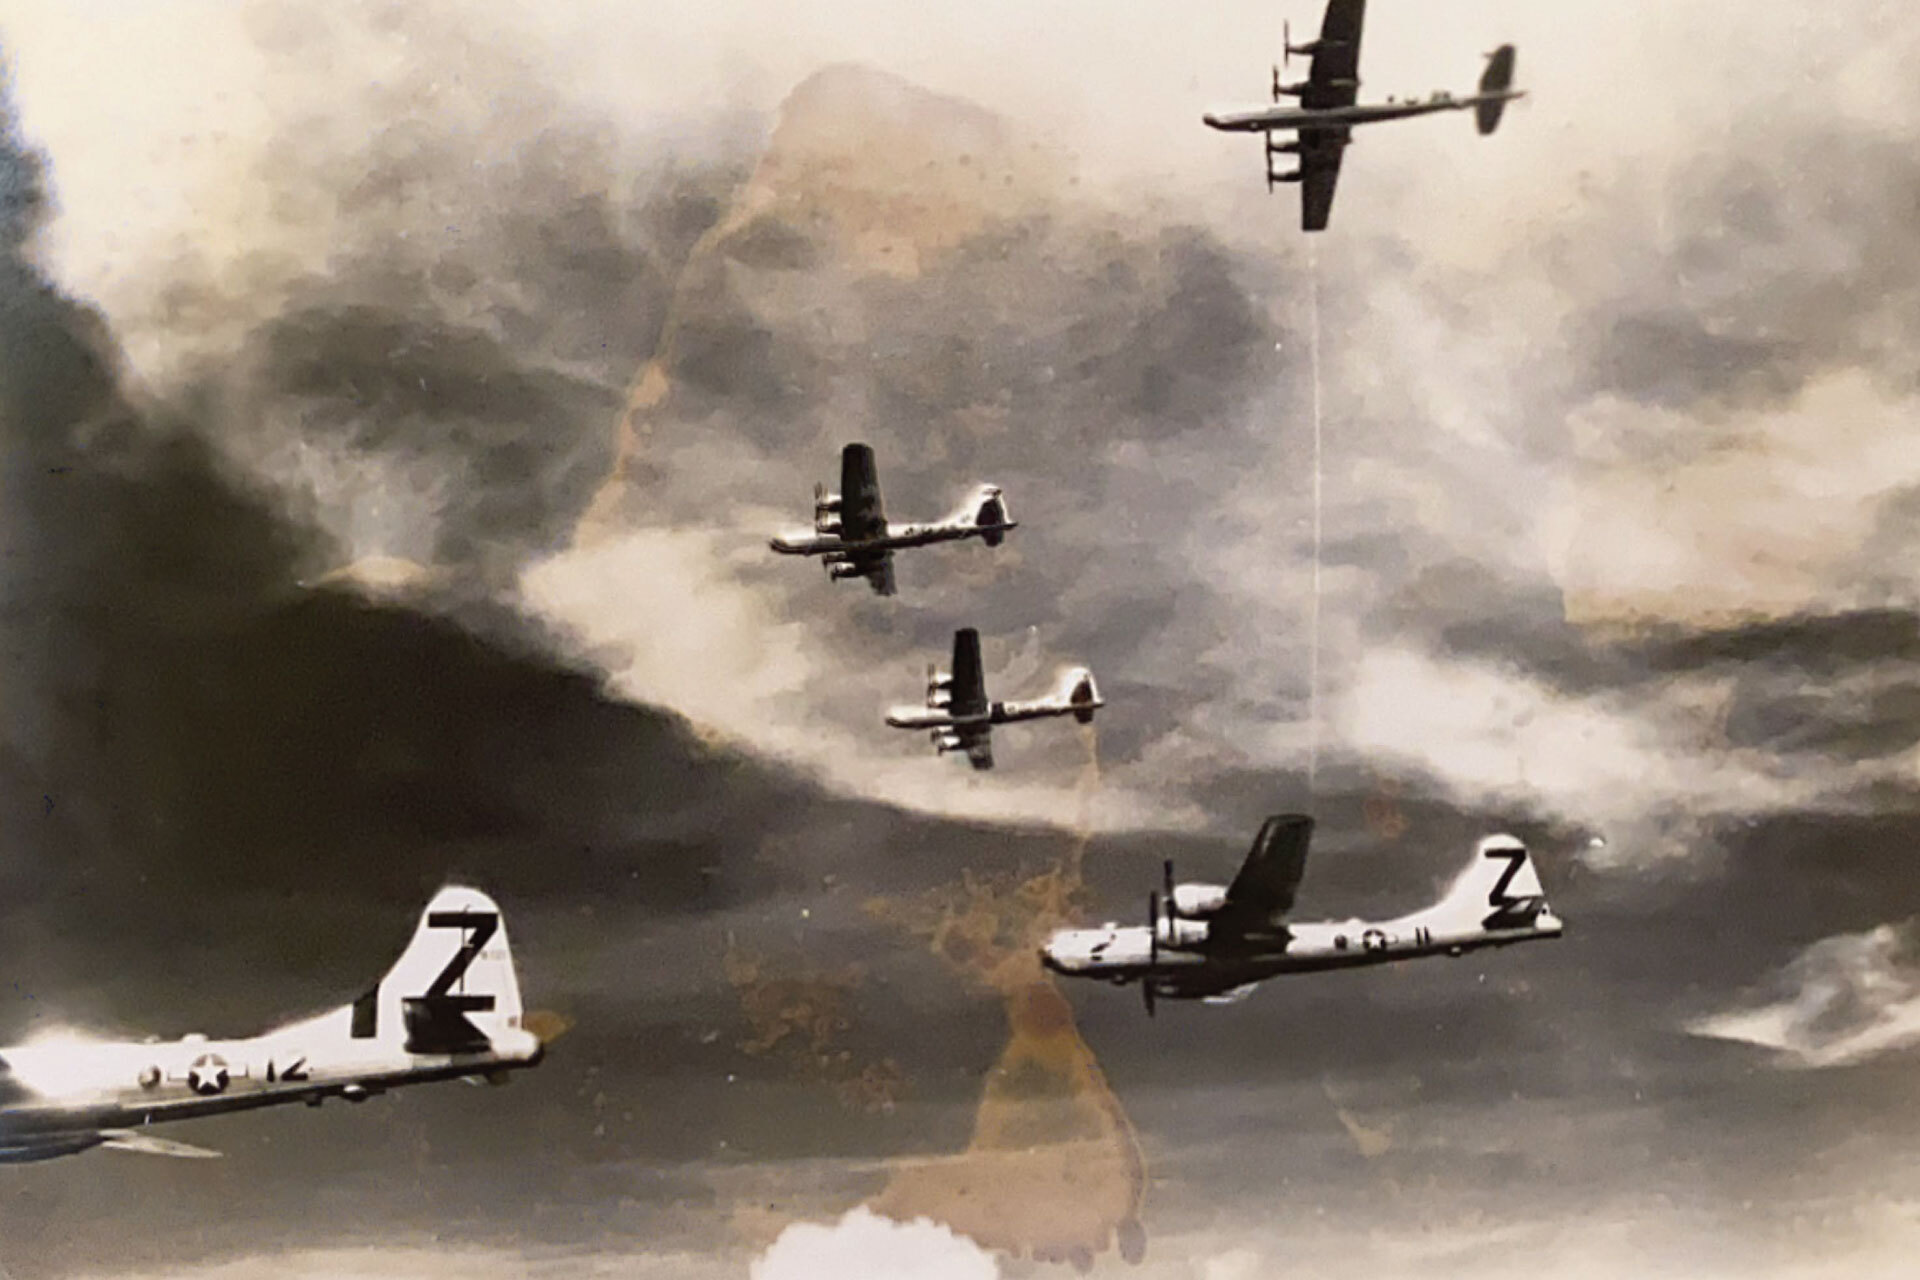 第二次世界大戦中の色あせた写真のスキャン。空を進む 2 機の飛行機。